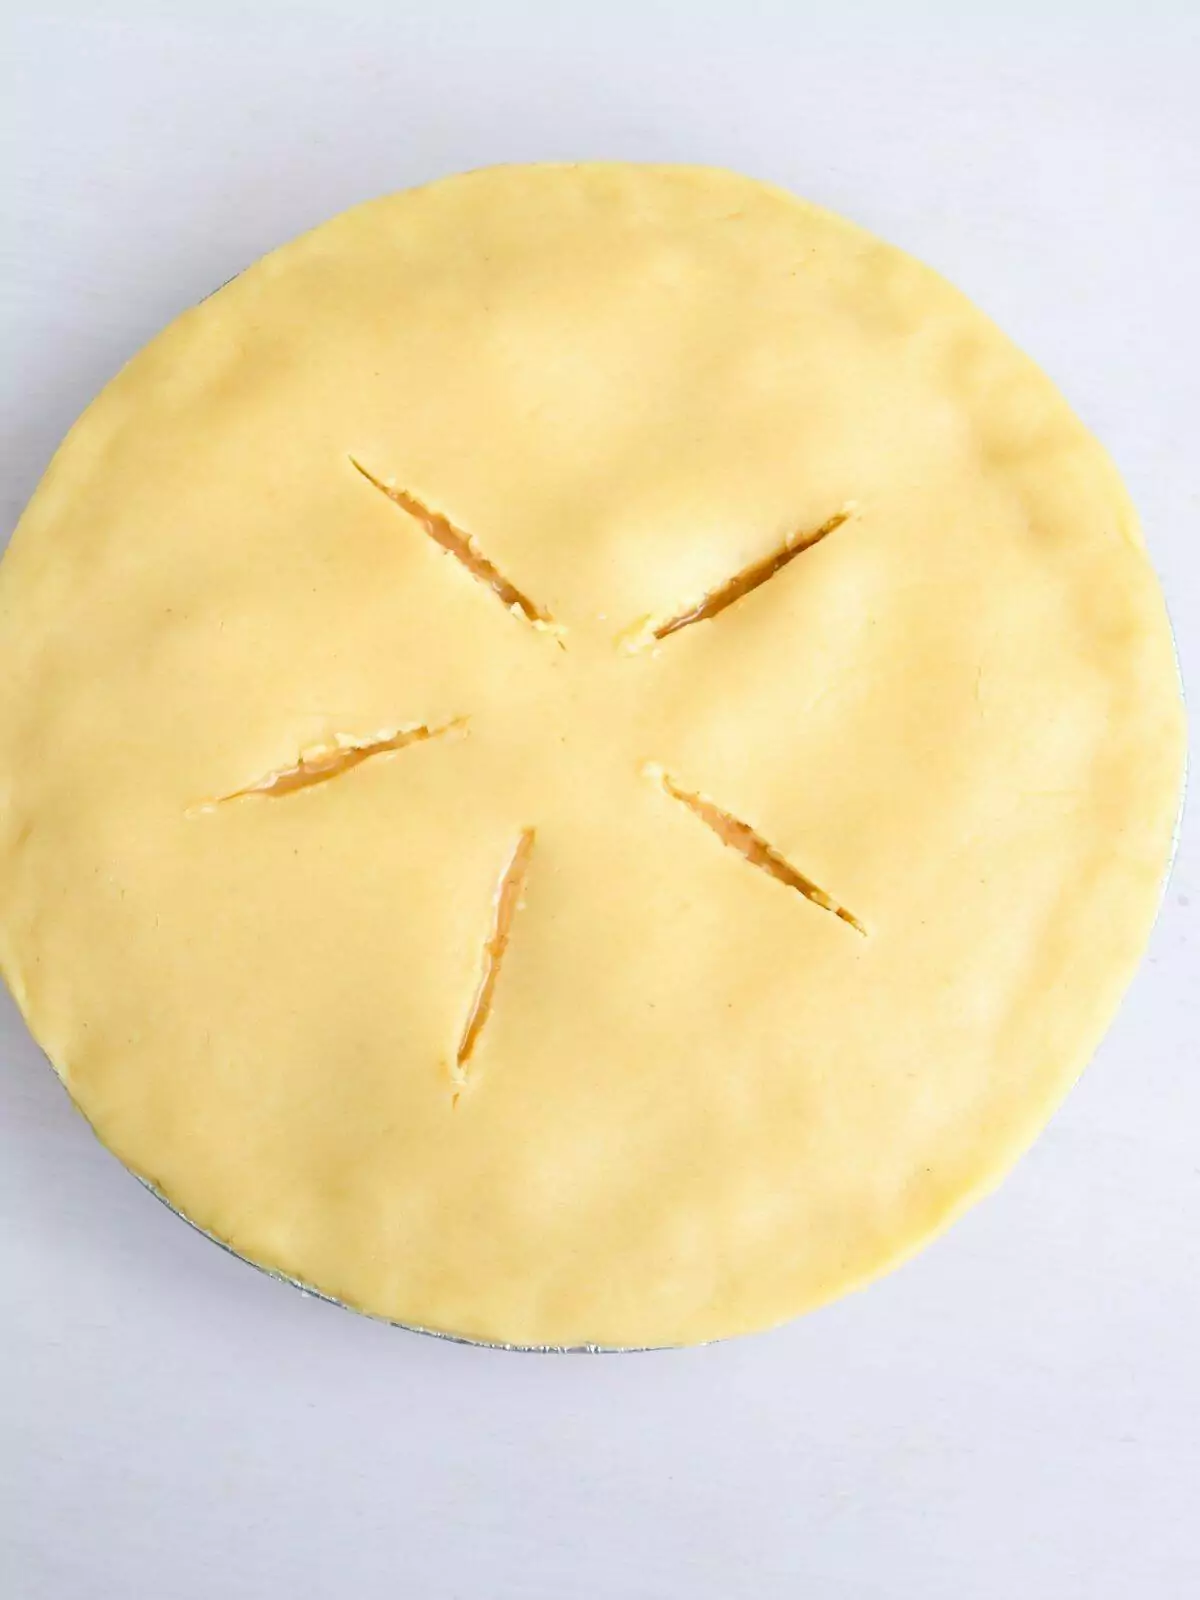 peach pie with slits cut in top pie crust.